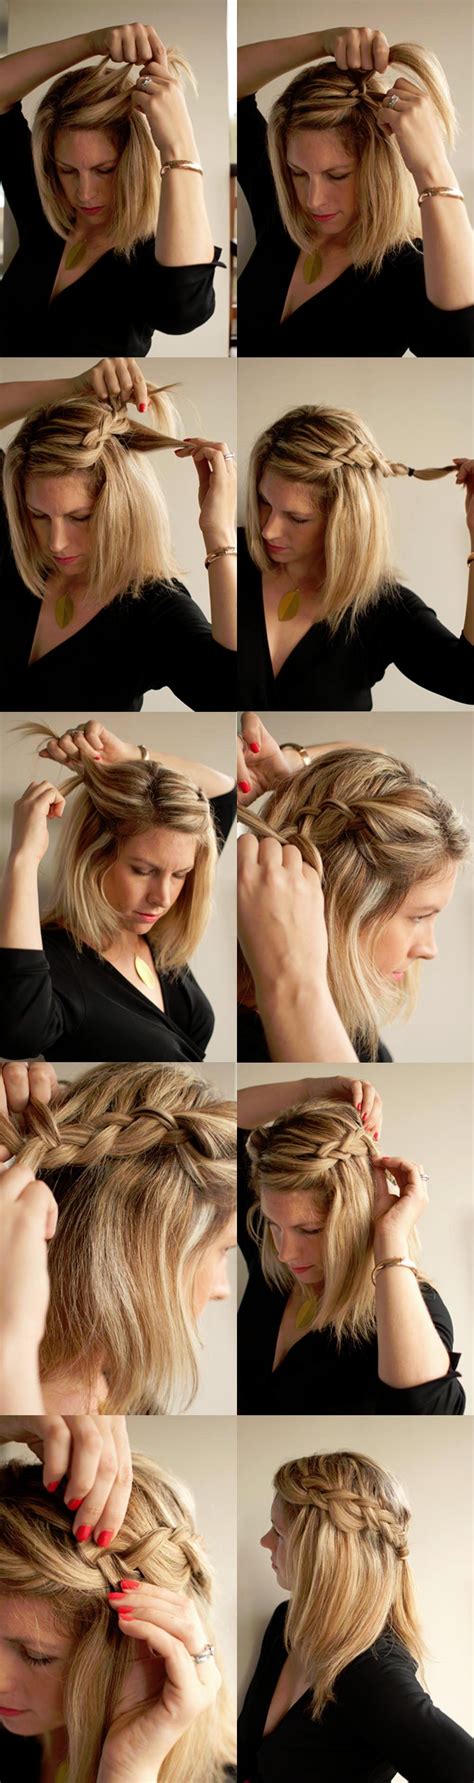 ways    hairstyle  braids pretty designs